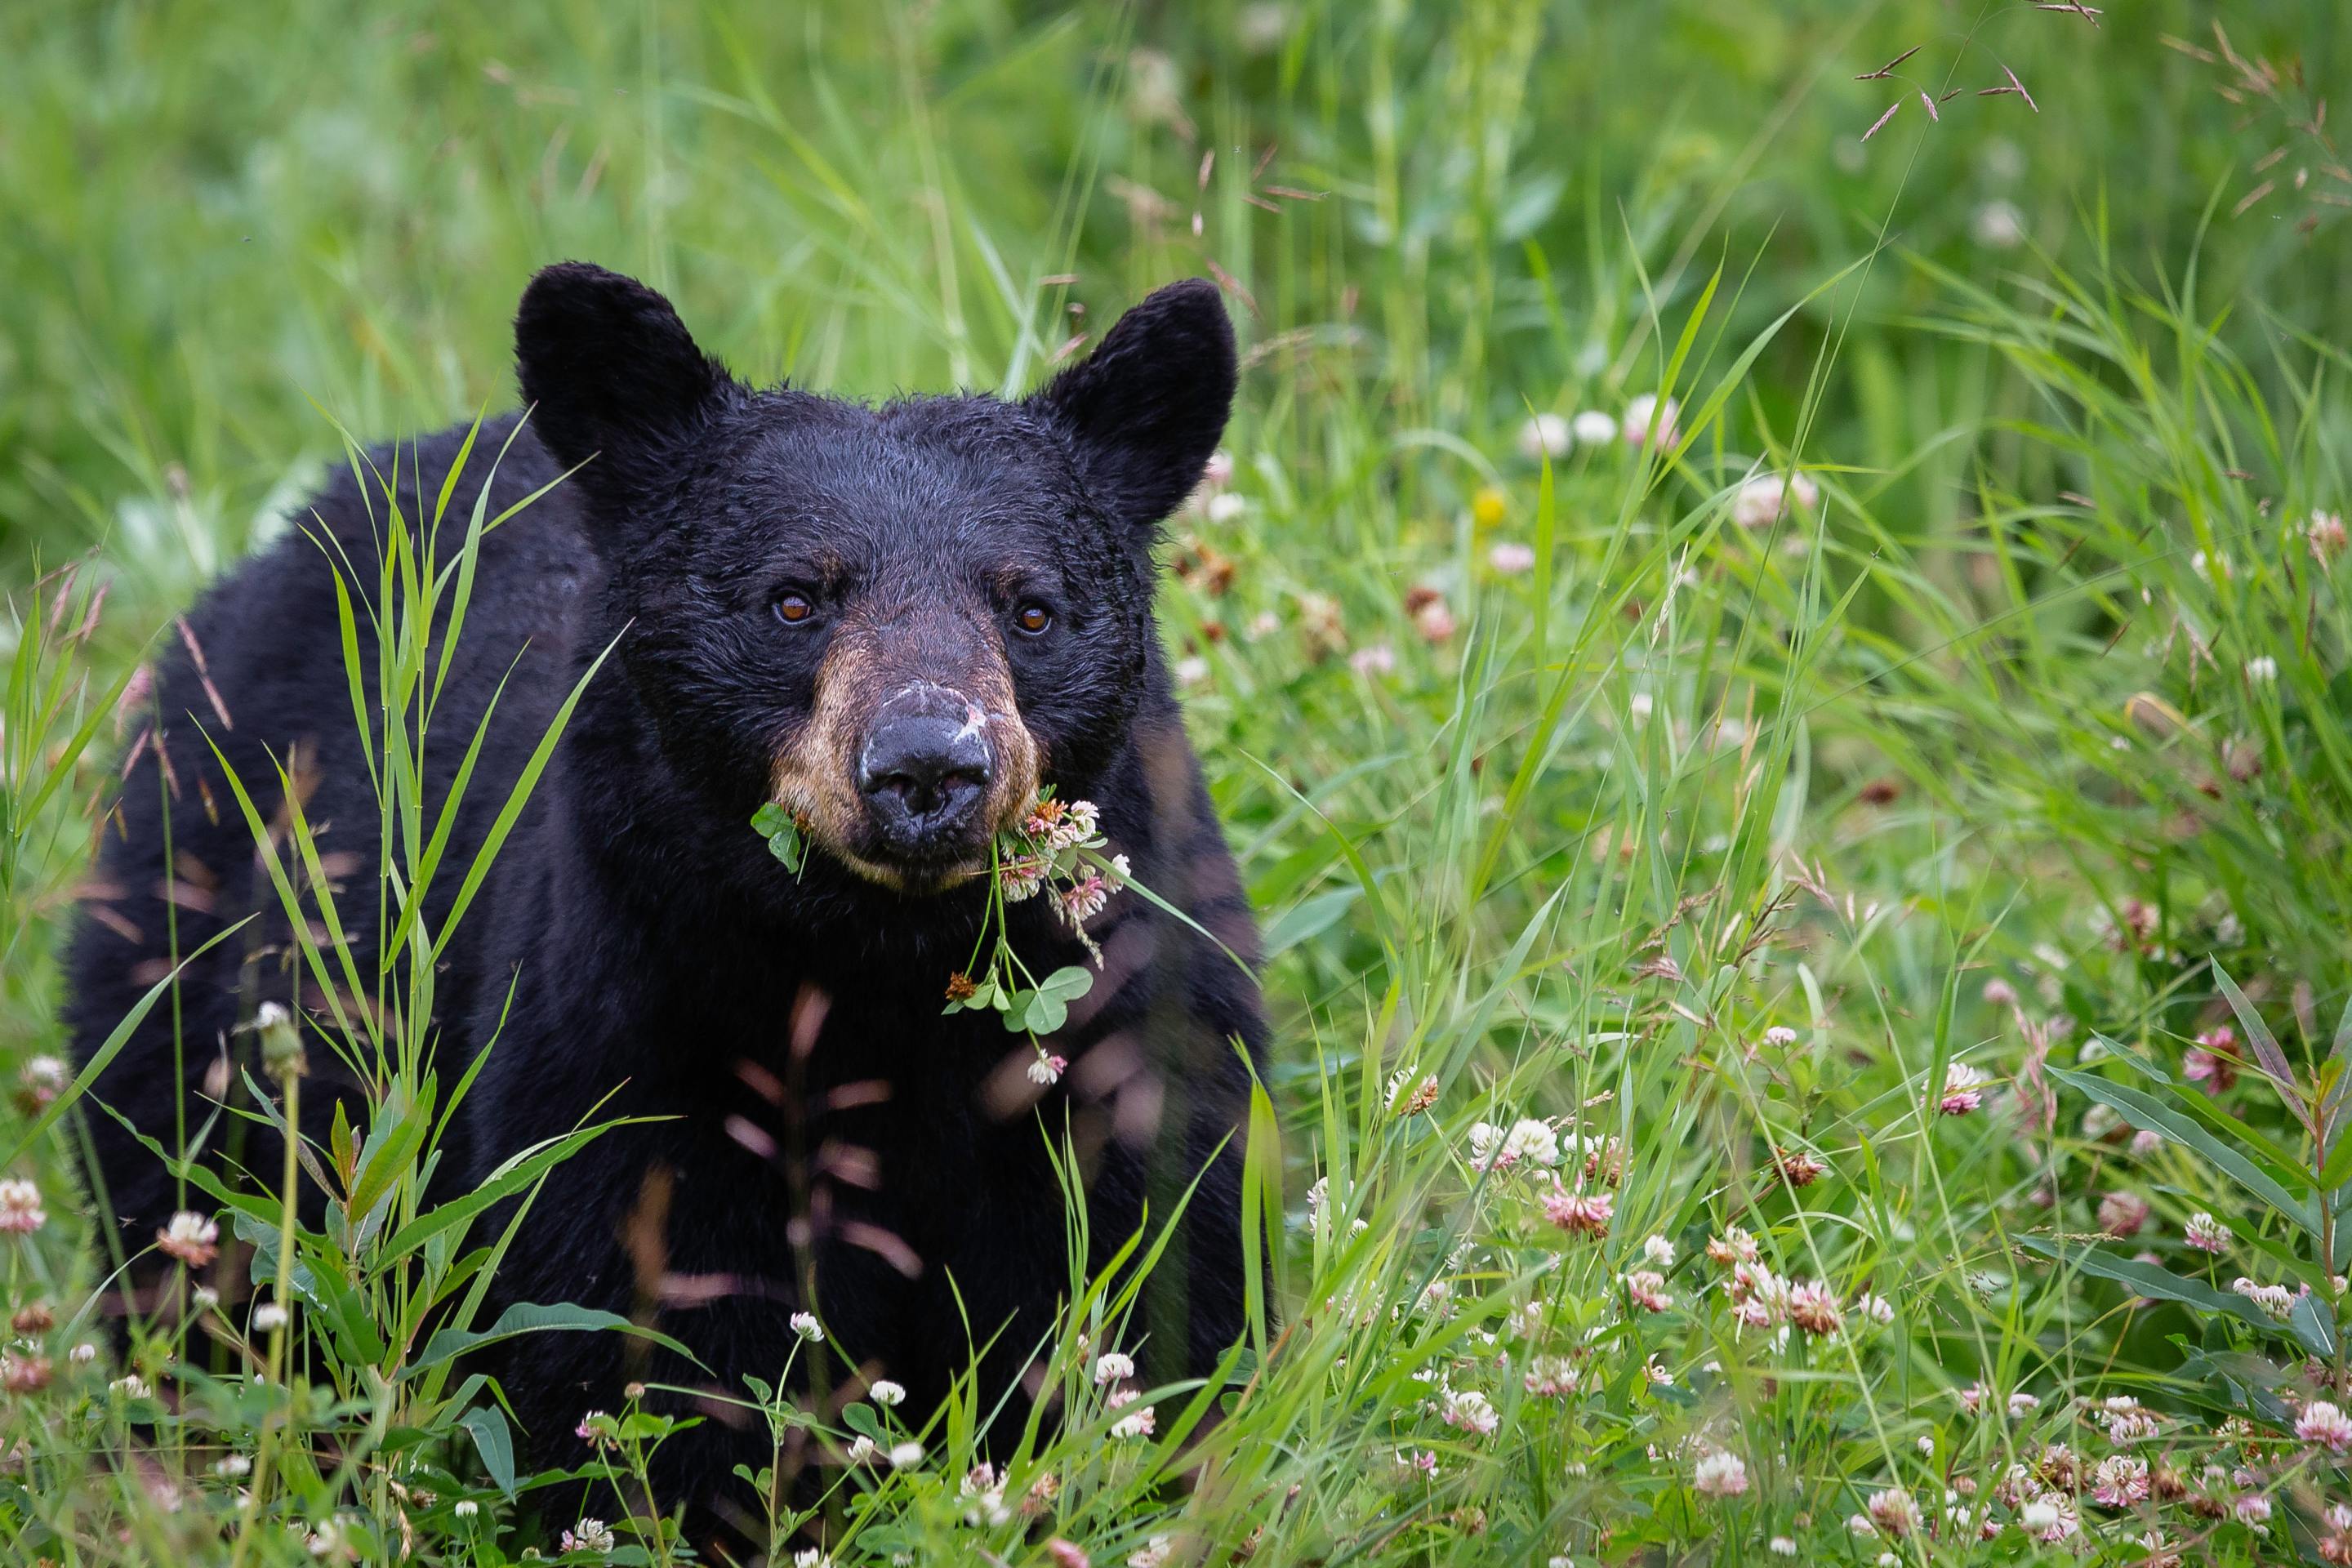 A bear eats grass in a field.